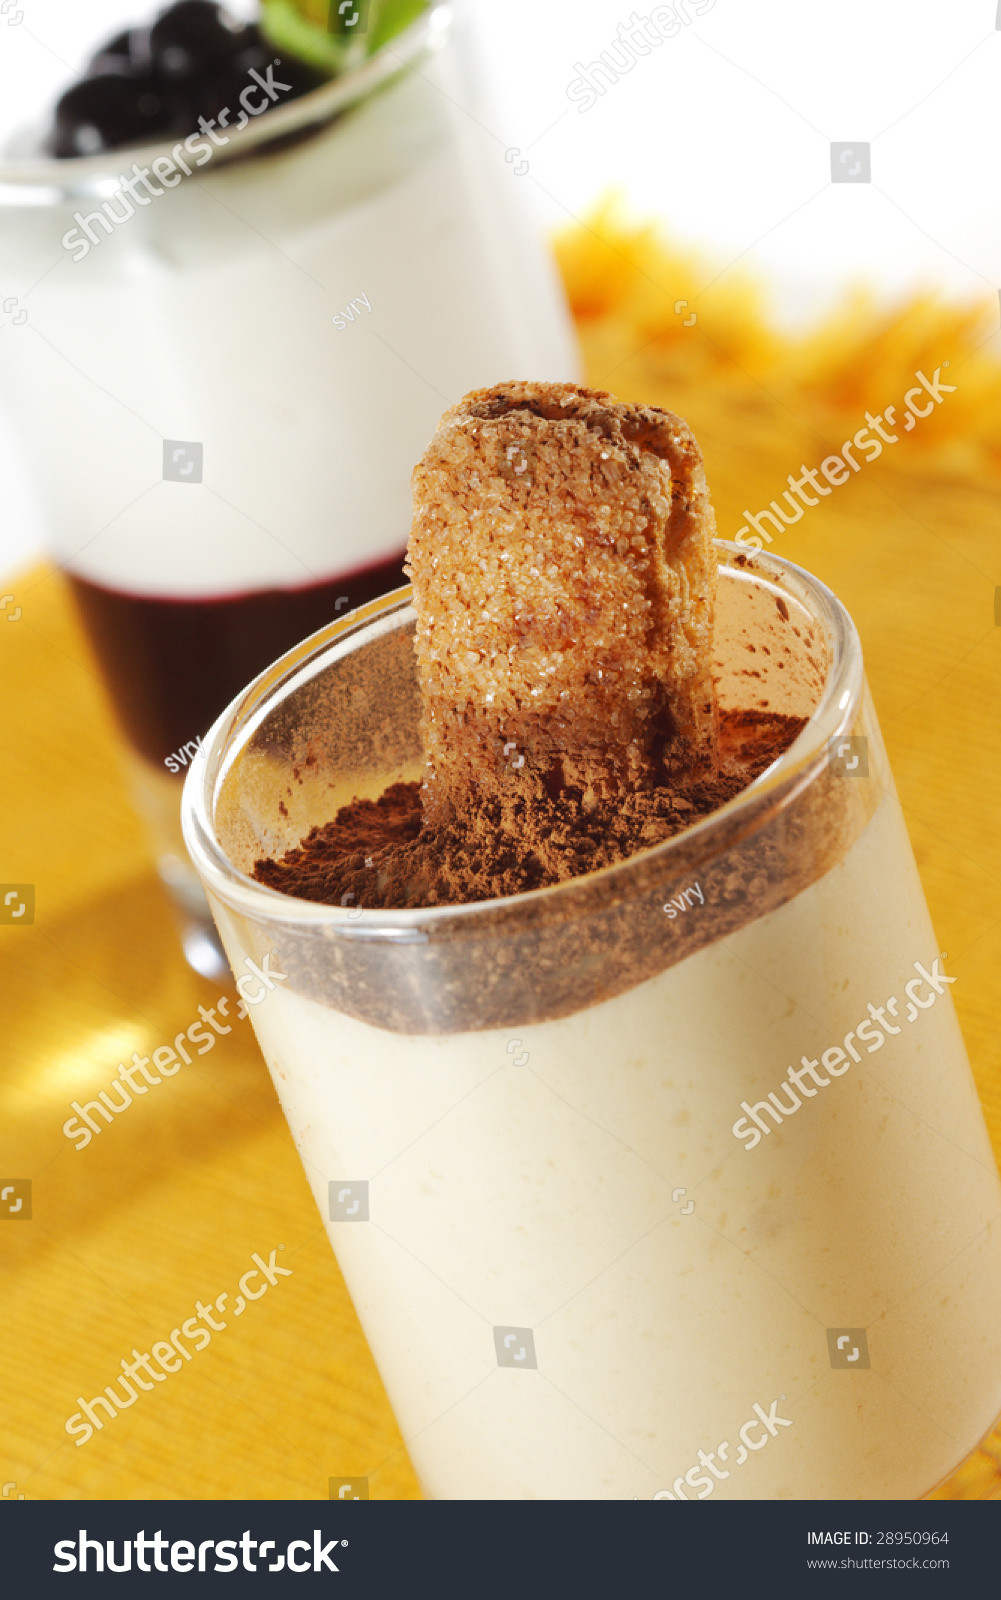 Desserts With Cocoa Powder
 Dessert Tiramisu Glass With Cocoa Powder Stock